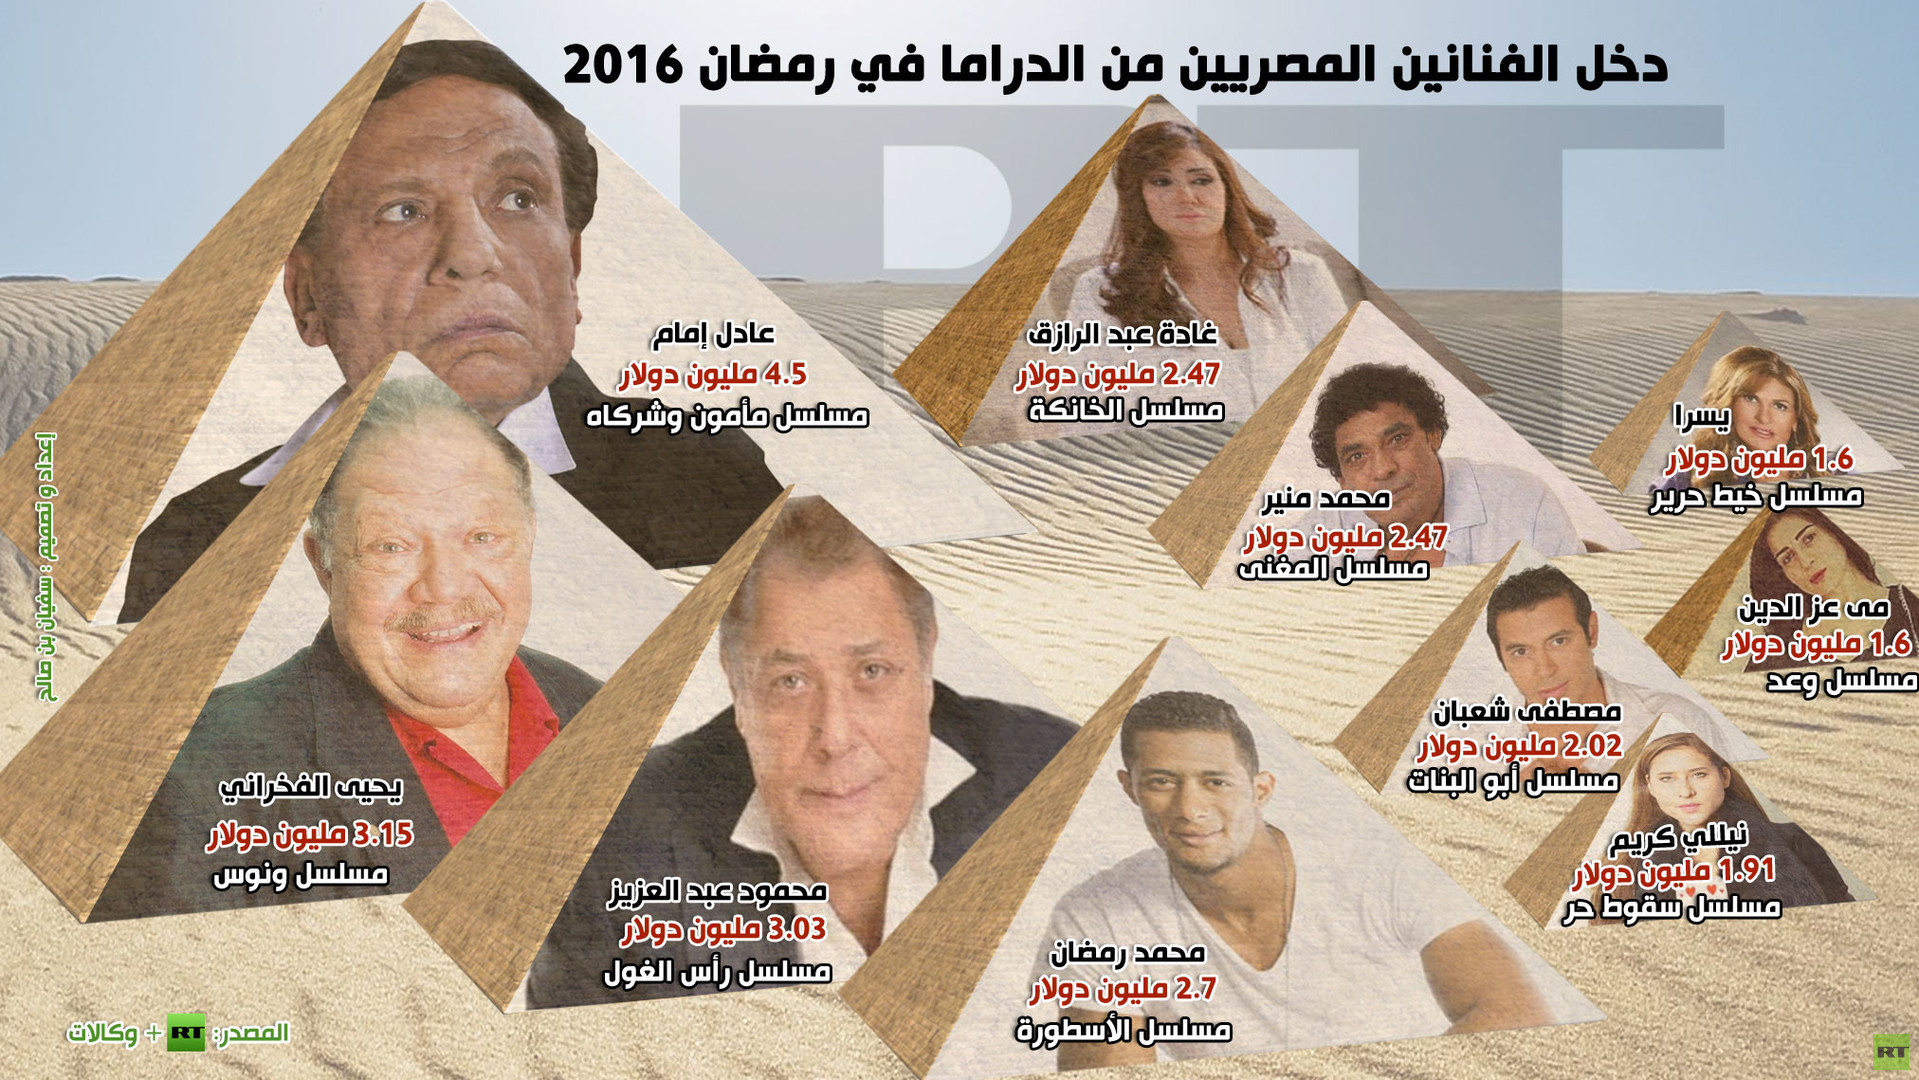 إنفوجرافيك: دخل الفنانين المصريين من الدراما في رمضان 2016